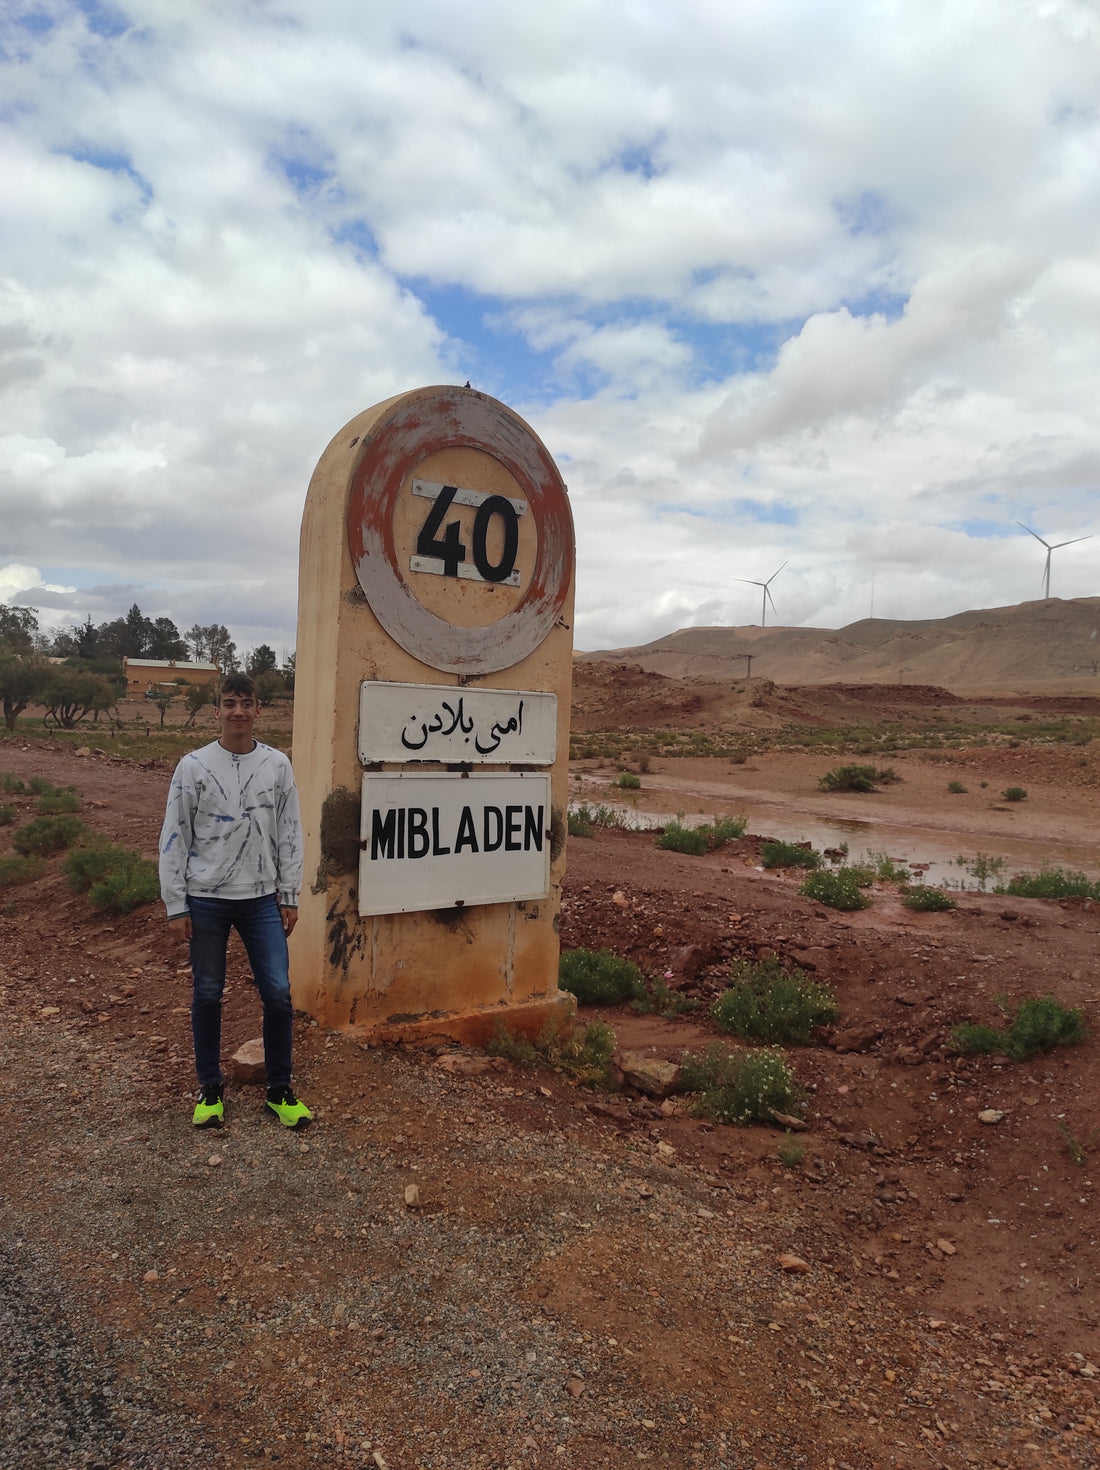 Visiting Mibladen, Morocco